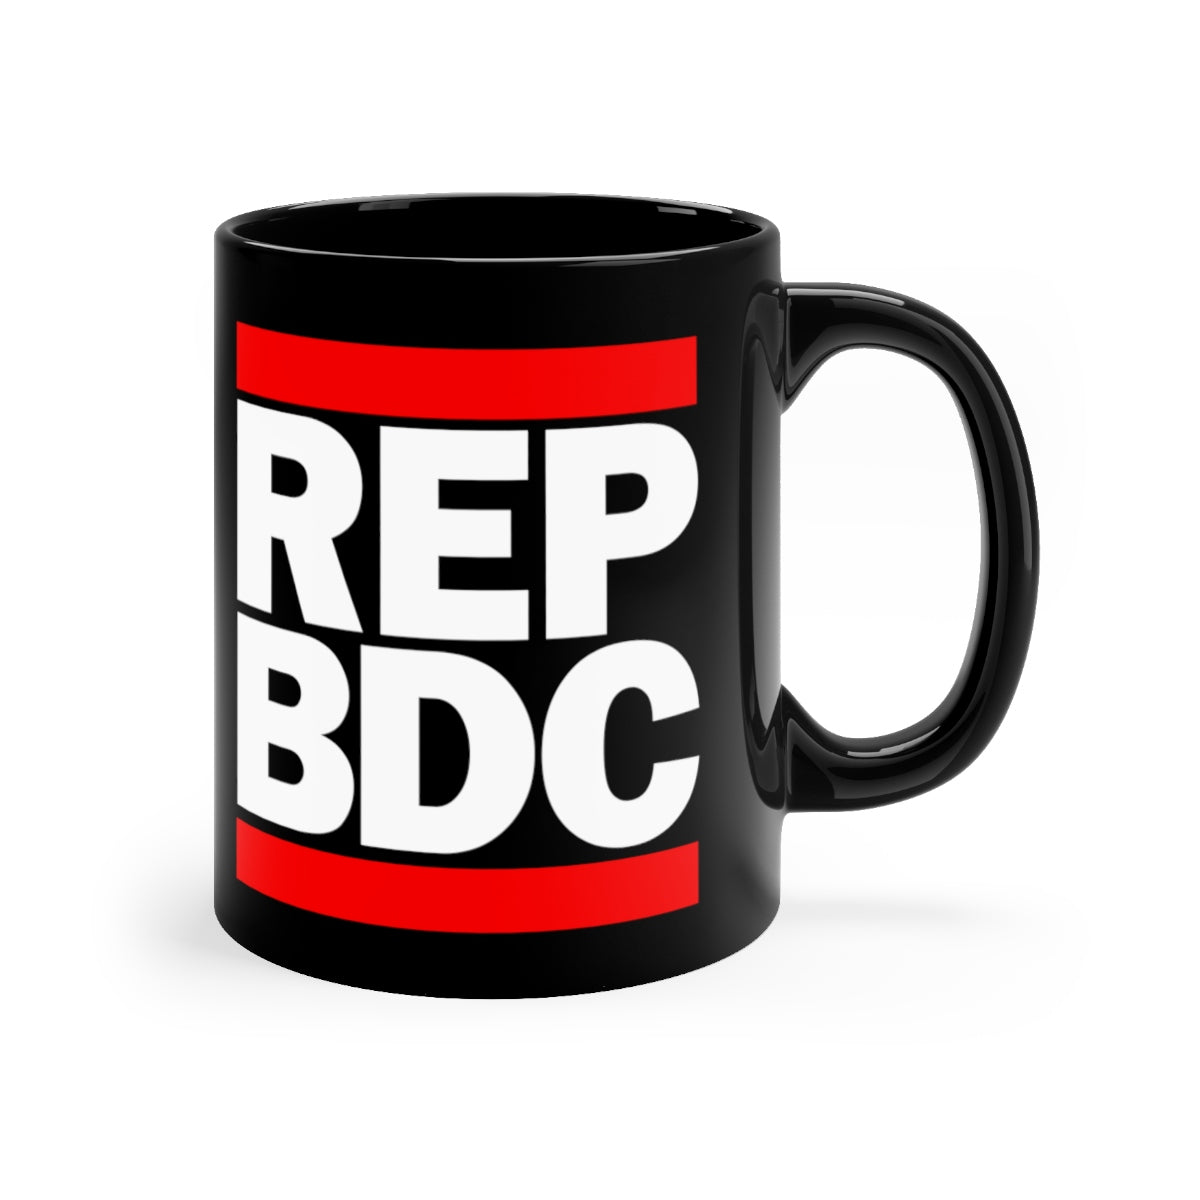 REP BDC Mug